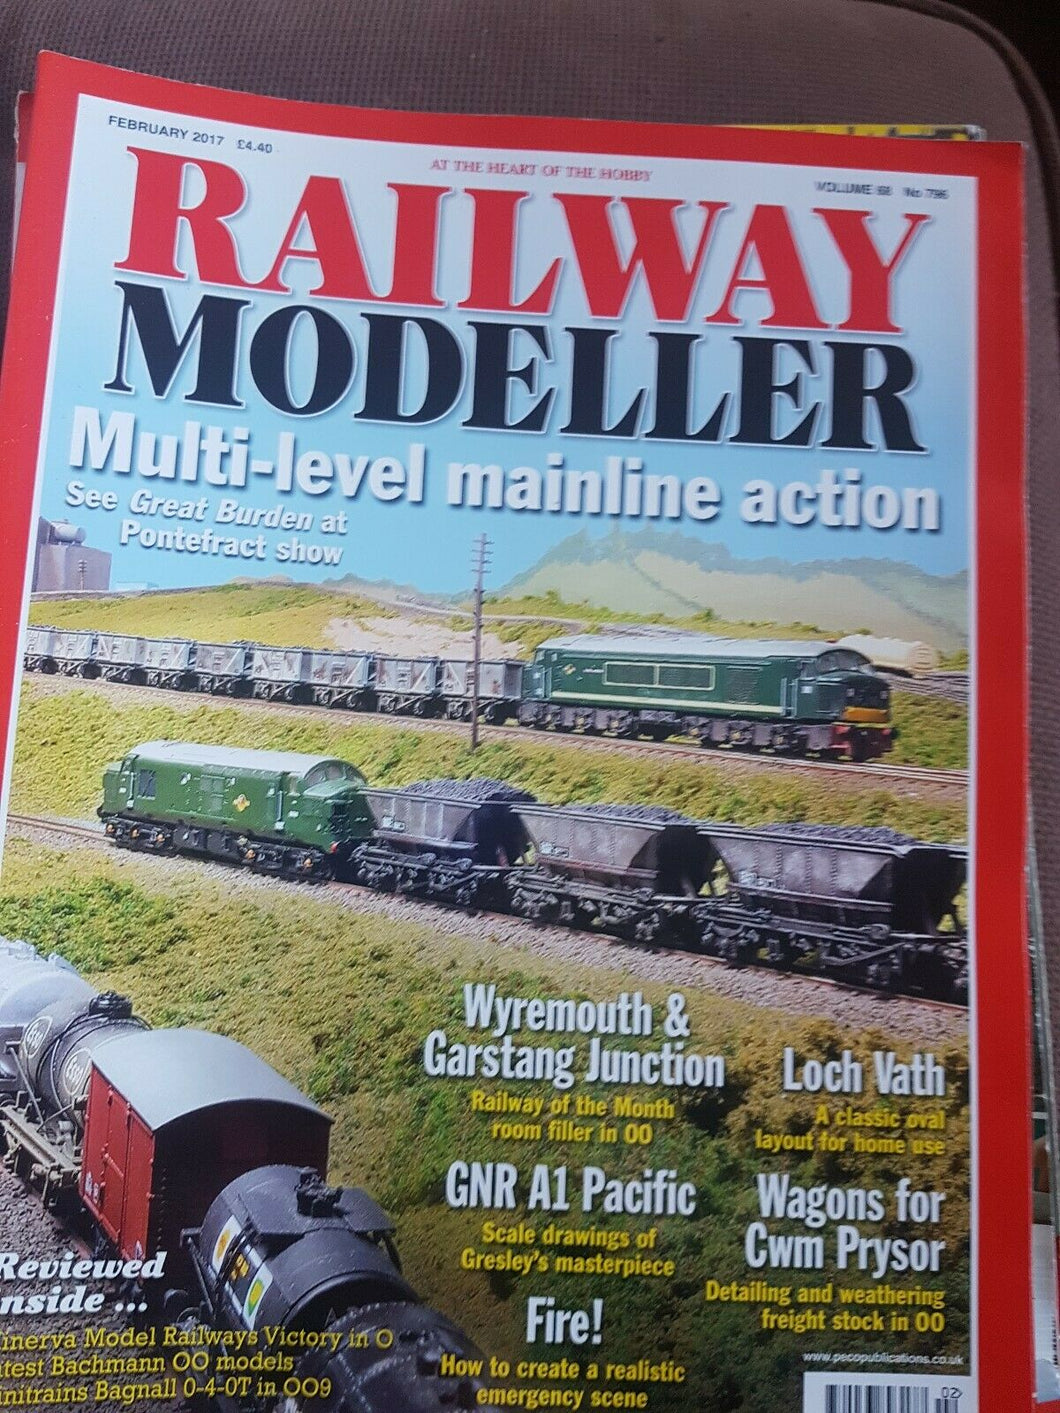 Railway modeller magazine February 2017